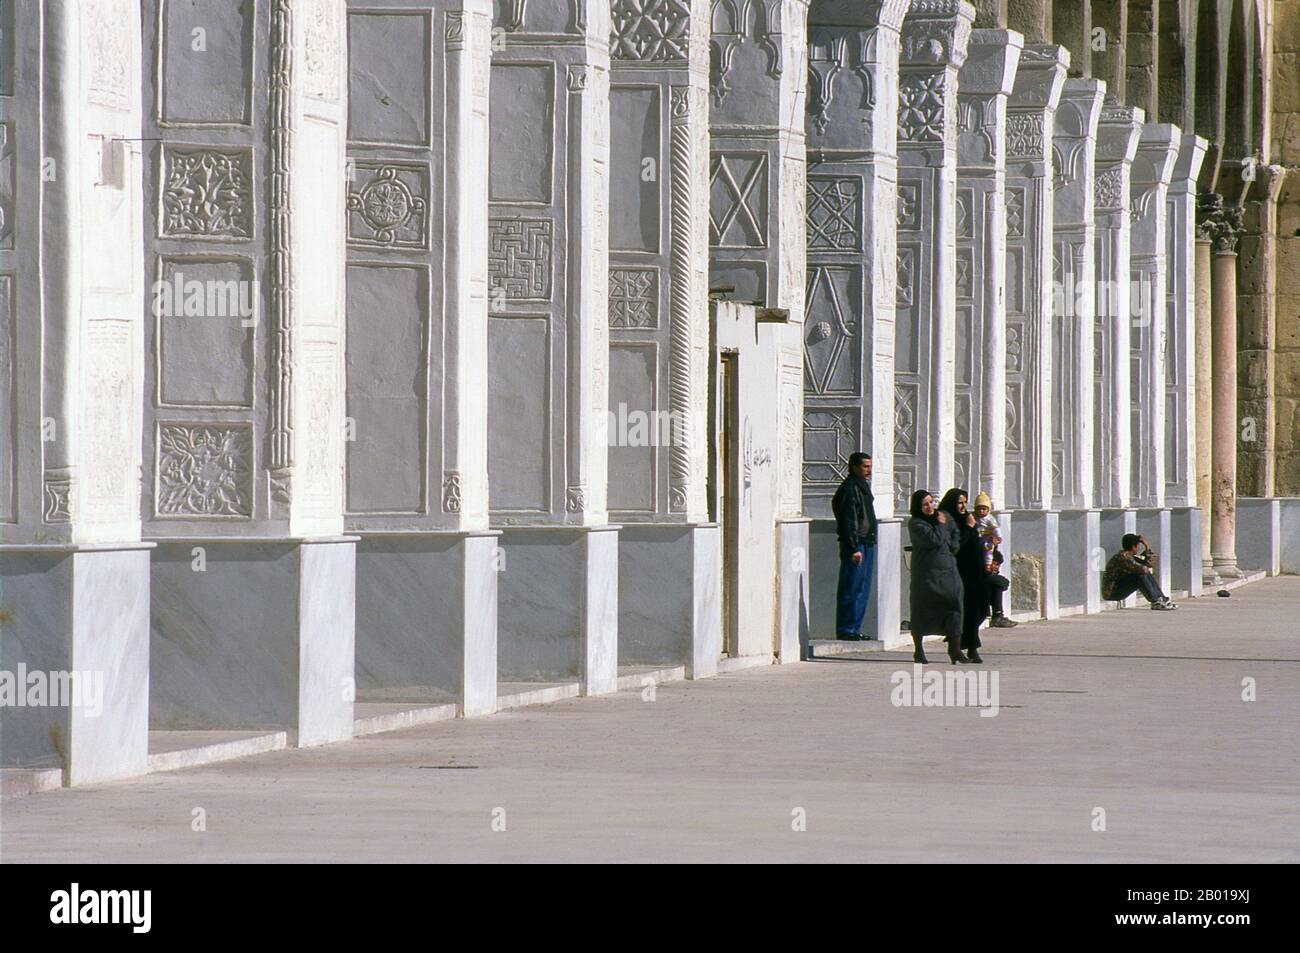 Syrien: Zentraler Innenhof, Umayyad-Moschee, Damaskus. Die Umayyad-Moschee, auch bekannt als die große Moschee von Damaskus, ist eine der größten und ältesten Moscheen der Welt. Es gilt als der viertheiligste Ort im Islam. Der Bau der Moschee soll kurz nach der arabischen Eroberung von Damaskus im Jahr 634 begonnen haben. Die Moschee enthält einen Schrein, der Johannes dem Täufer gewidmet ist, sowie das Grab von Saladin. Stockfoto